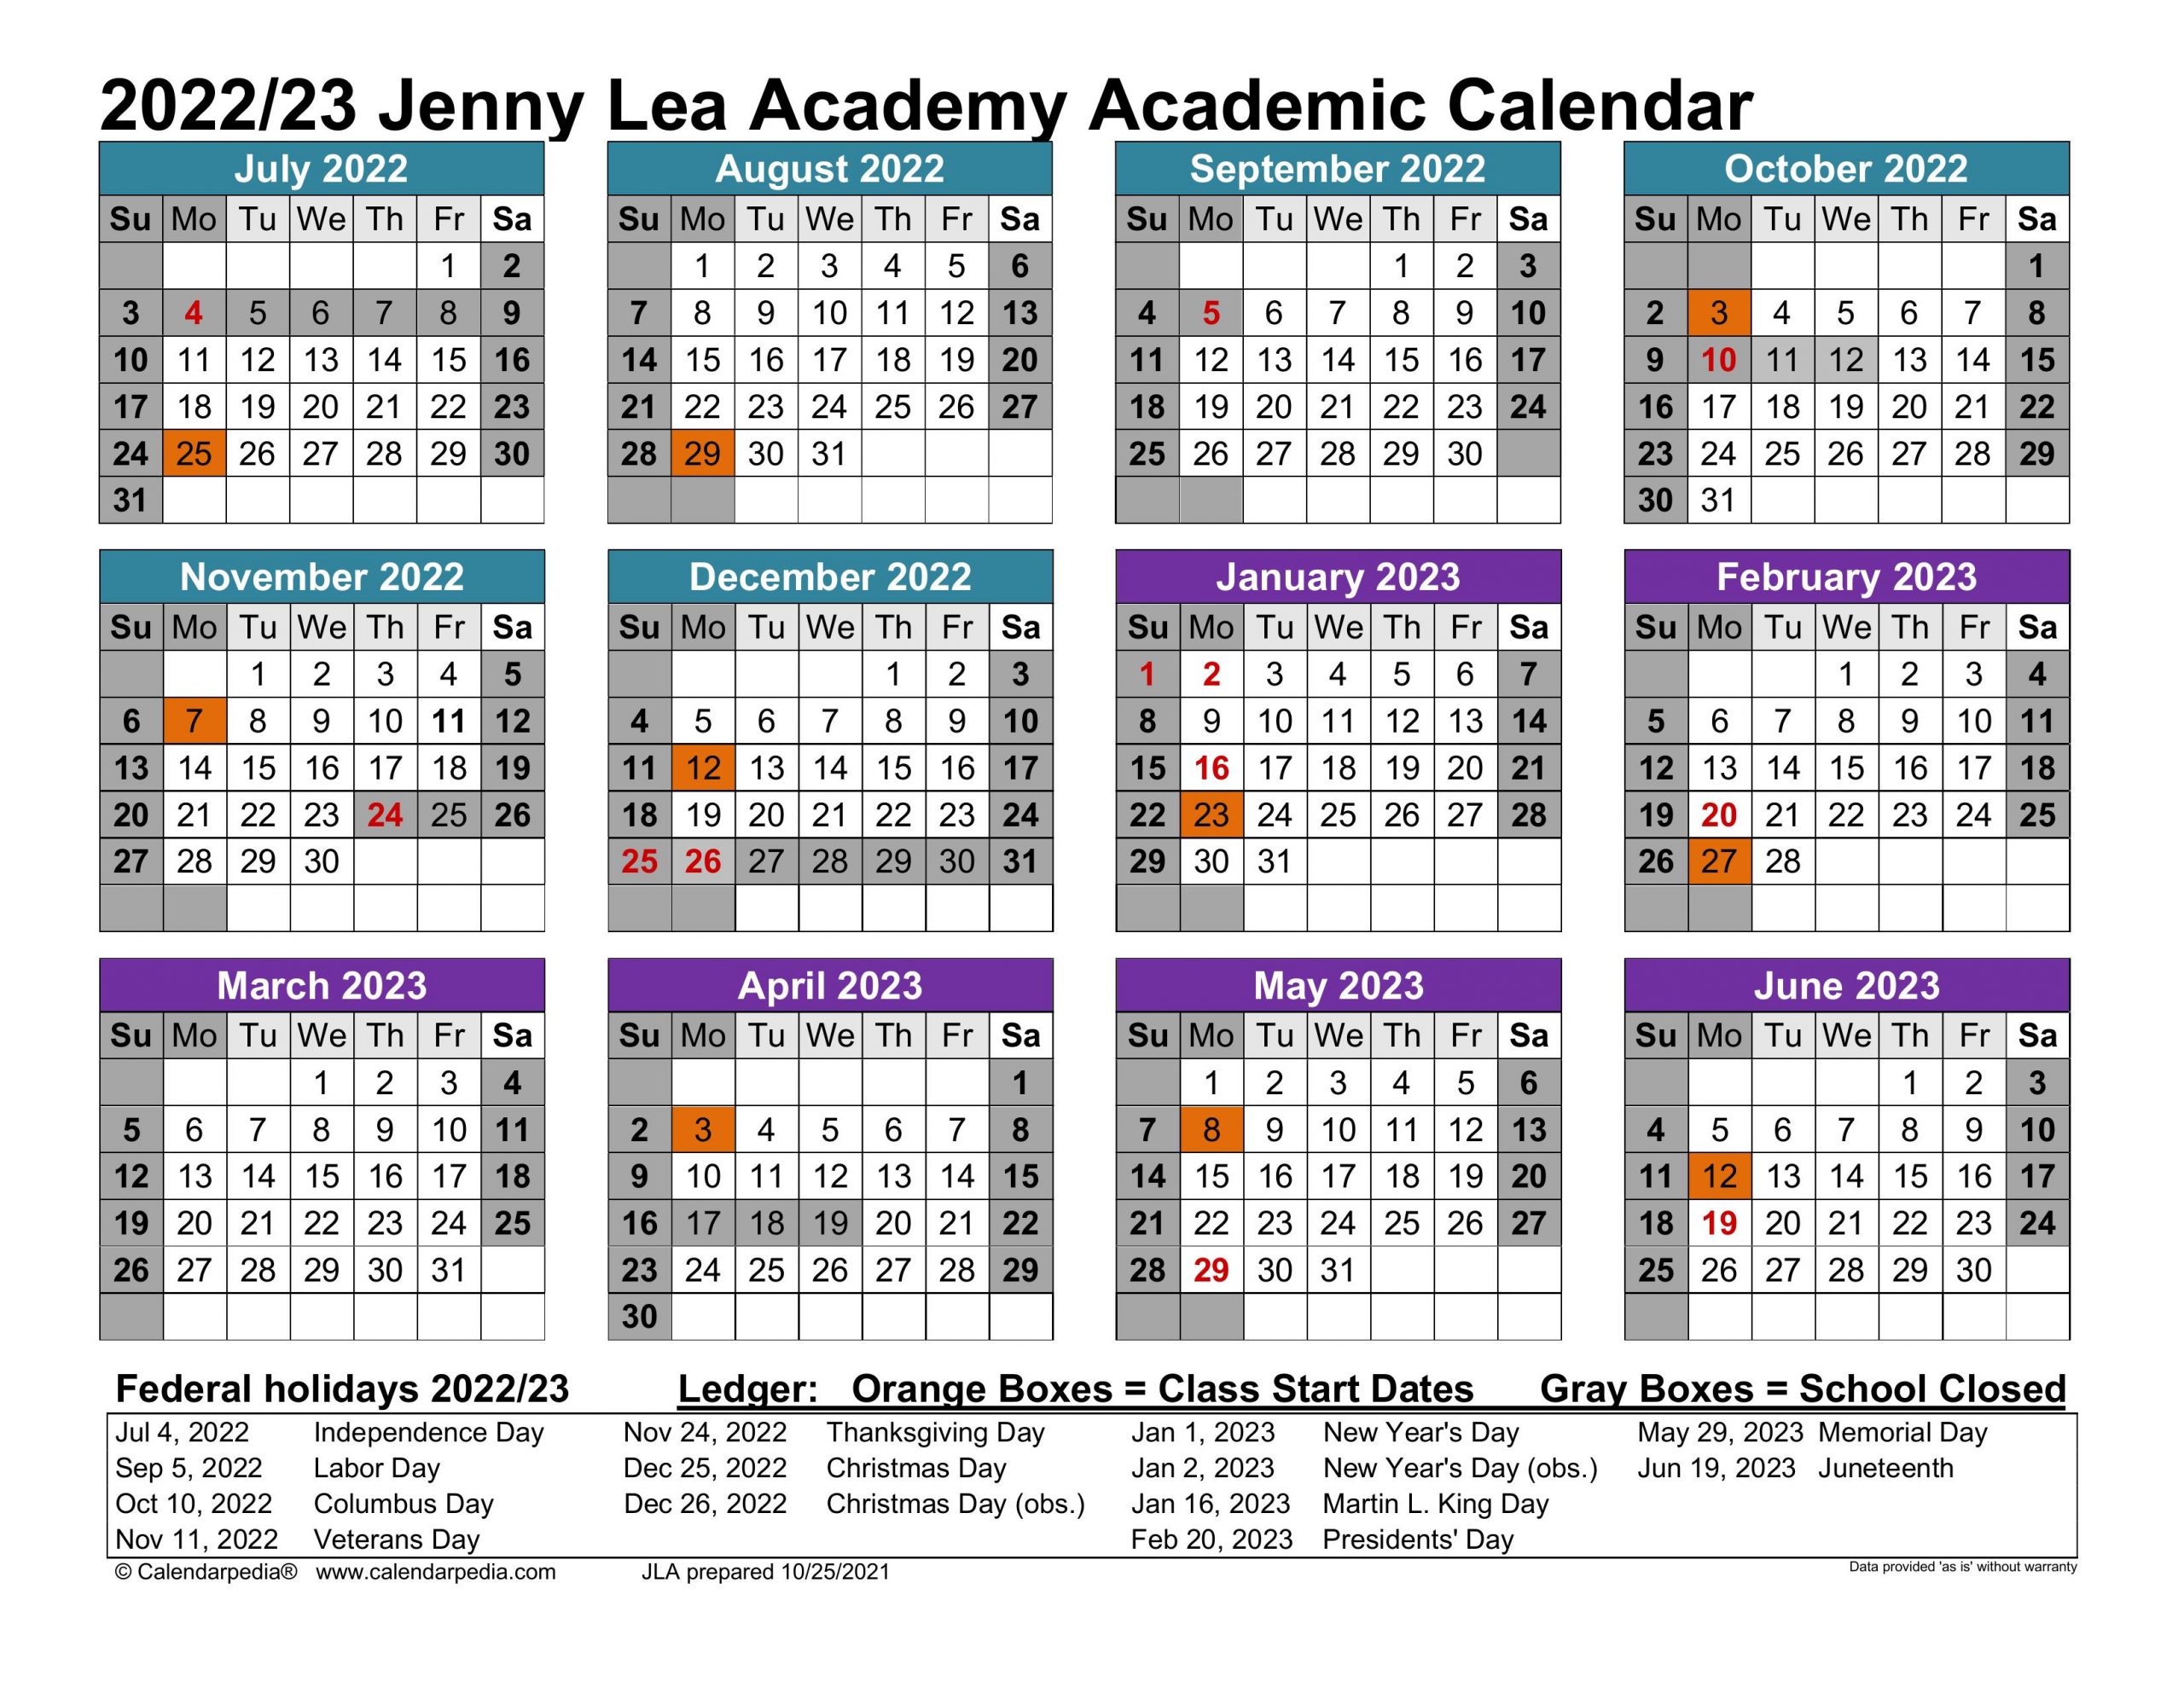 Jenny Lea Academy Calendar for 2022-2023